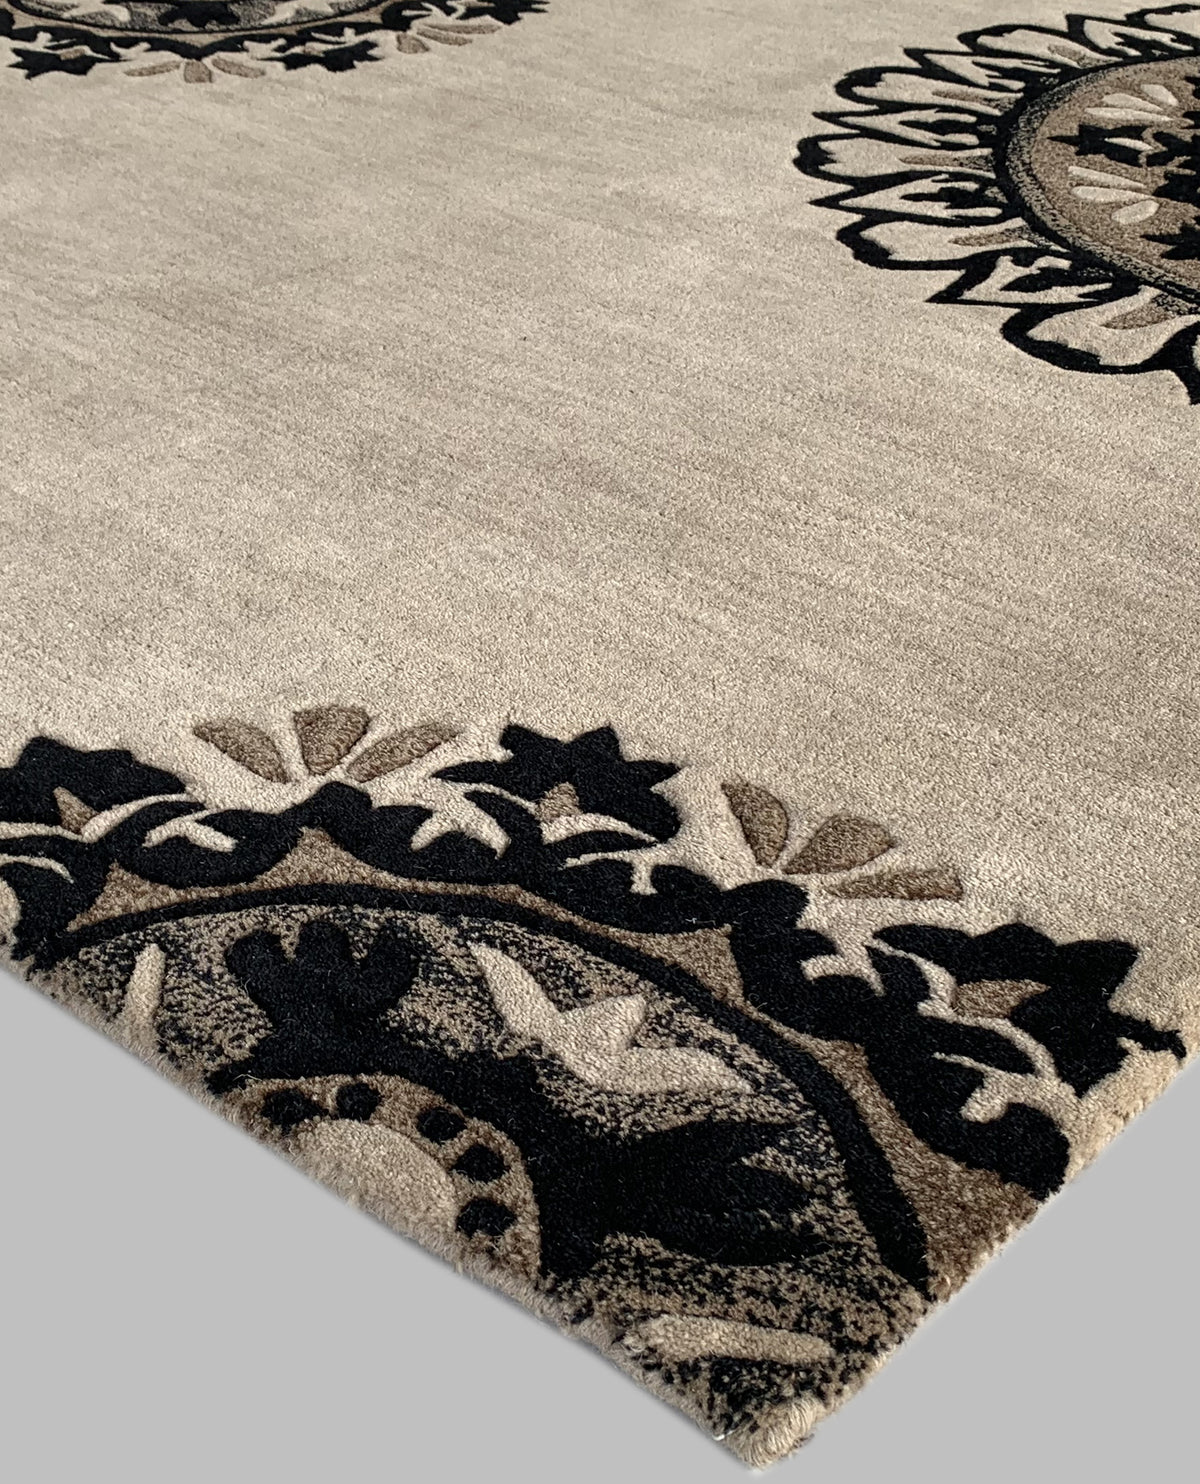 Rugslane Beige & Black Color Floral Design 100% New Zealand Wool Handmade Designer Carpet 5ft X 8ft